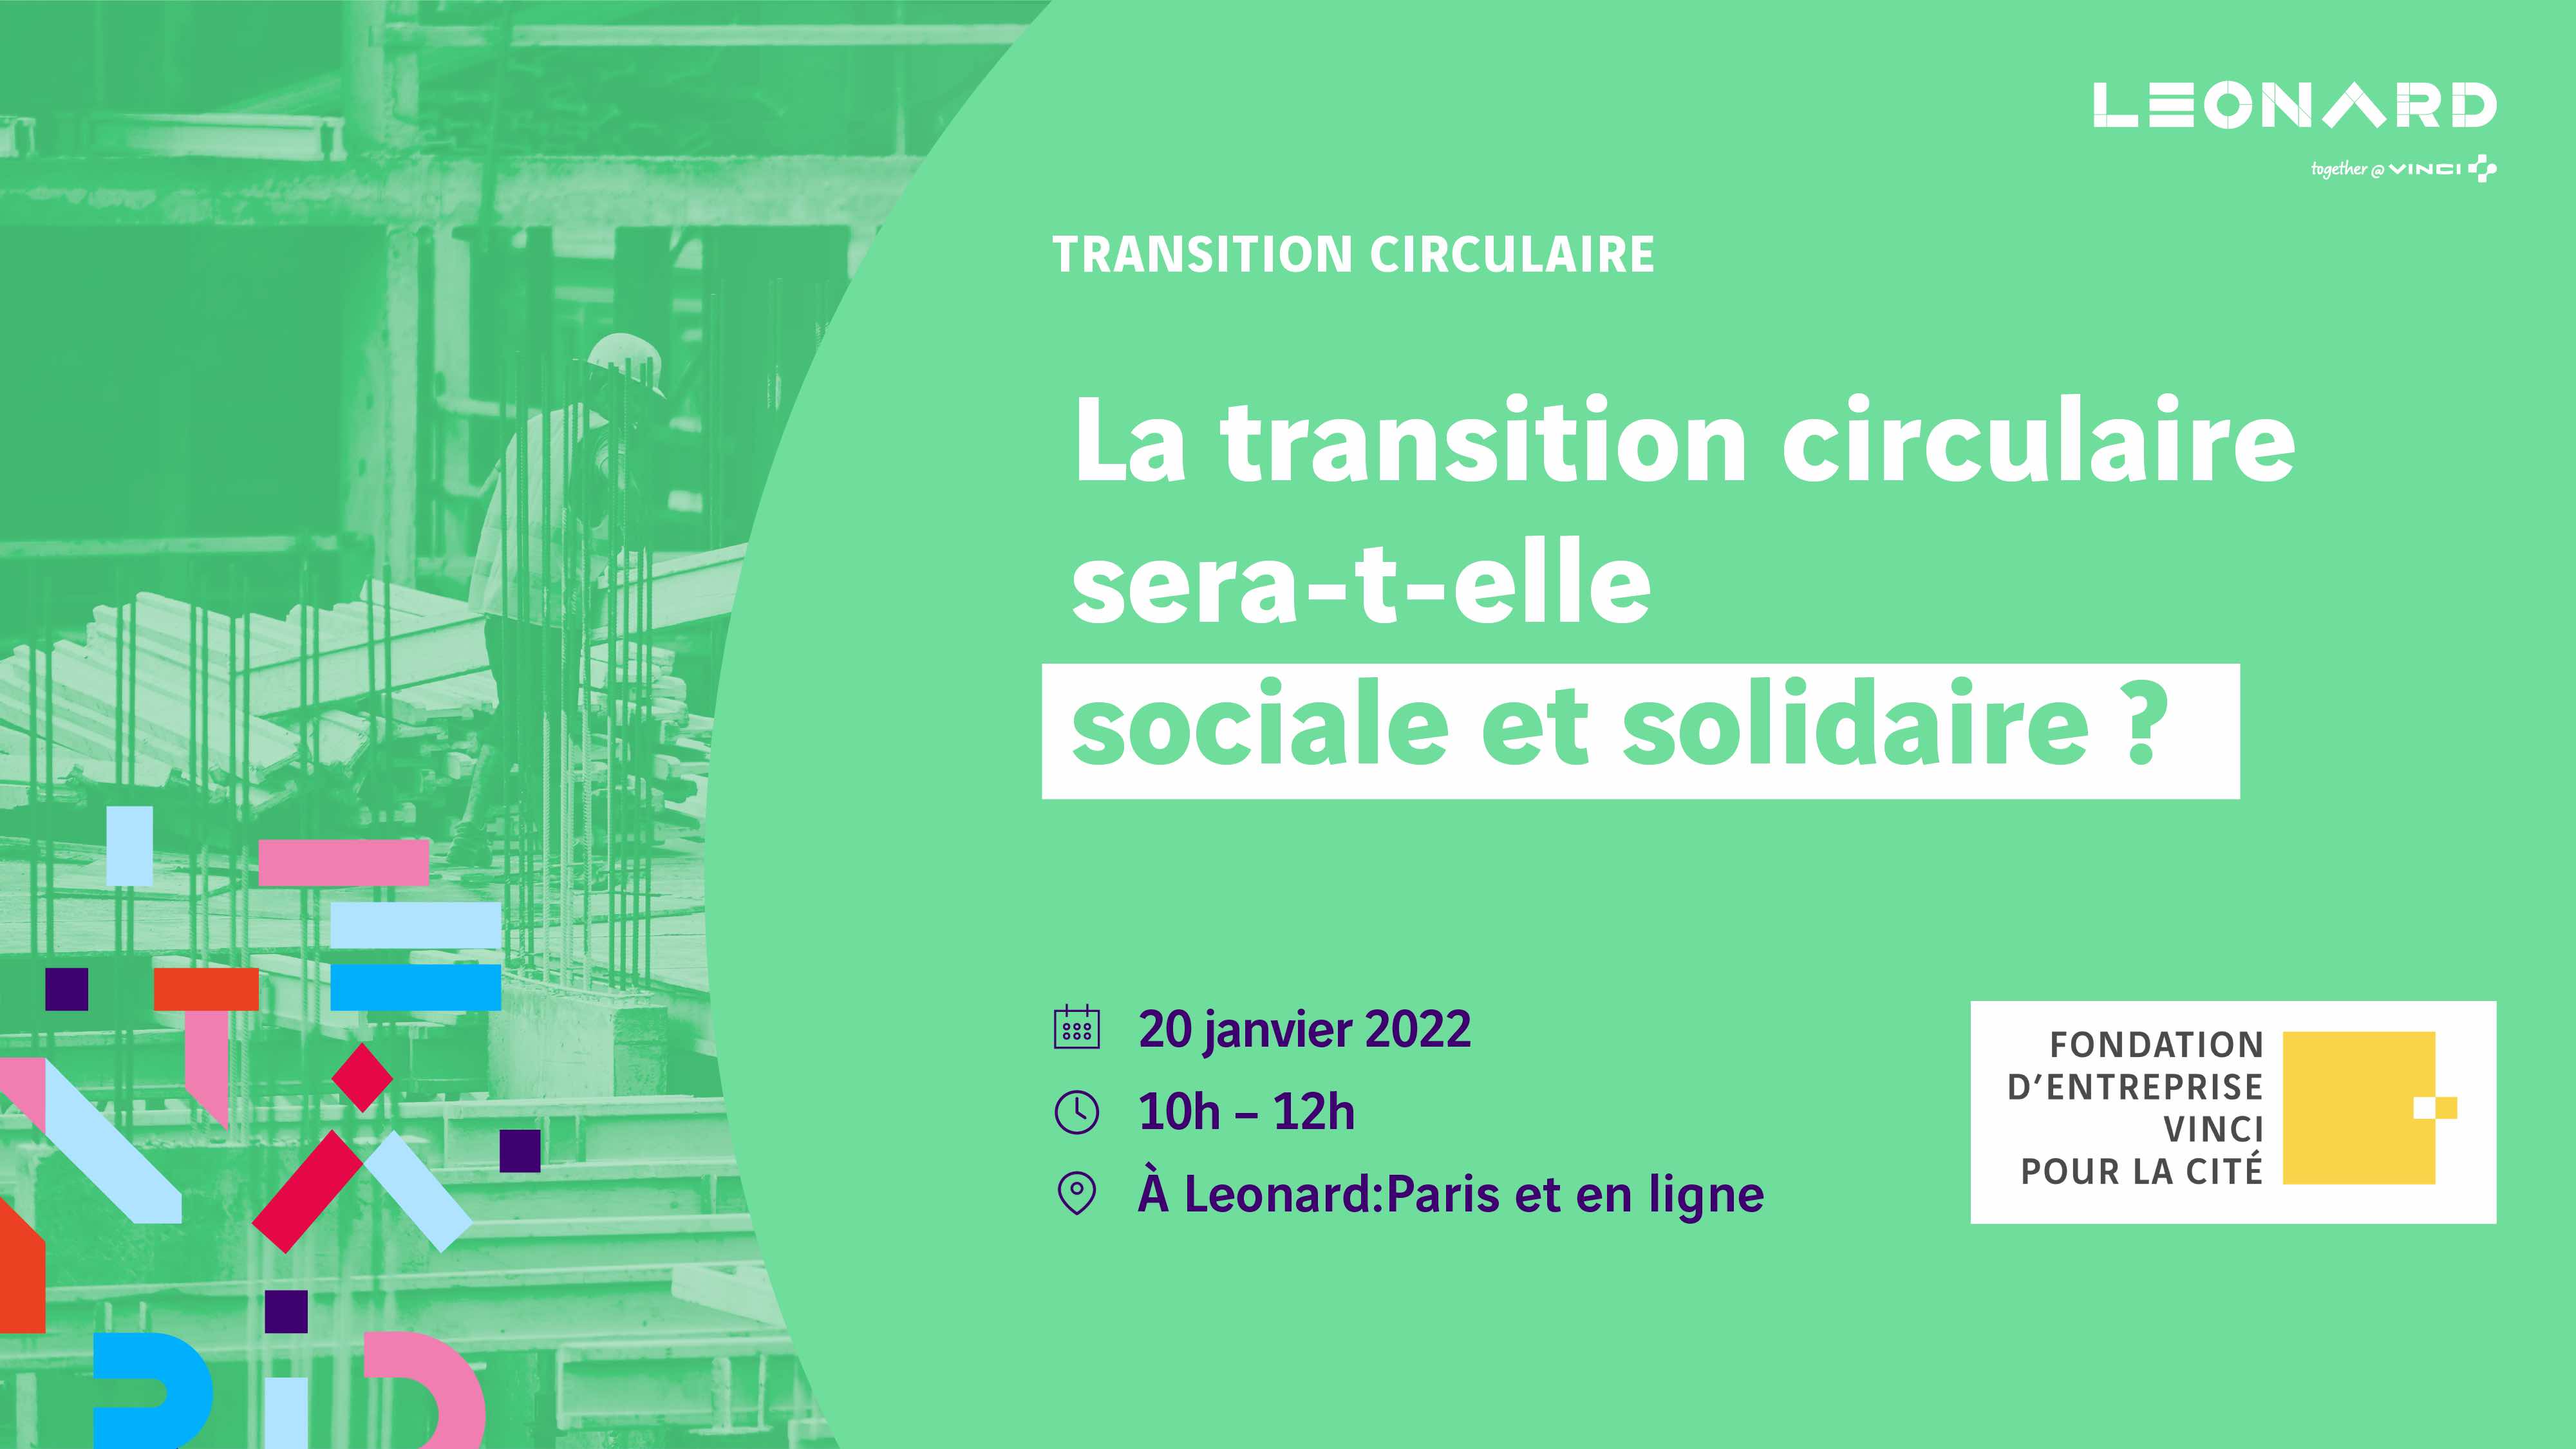 La transition circulaire sera-t-elle sociale et solidaire ?